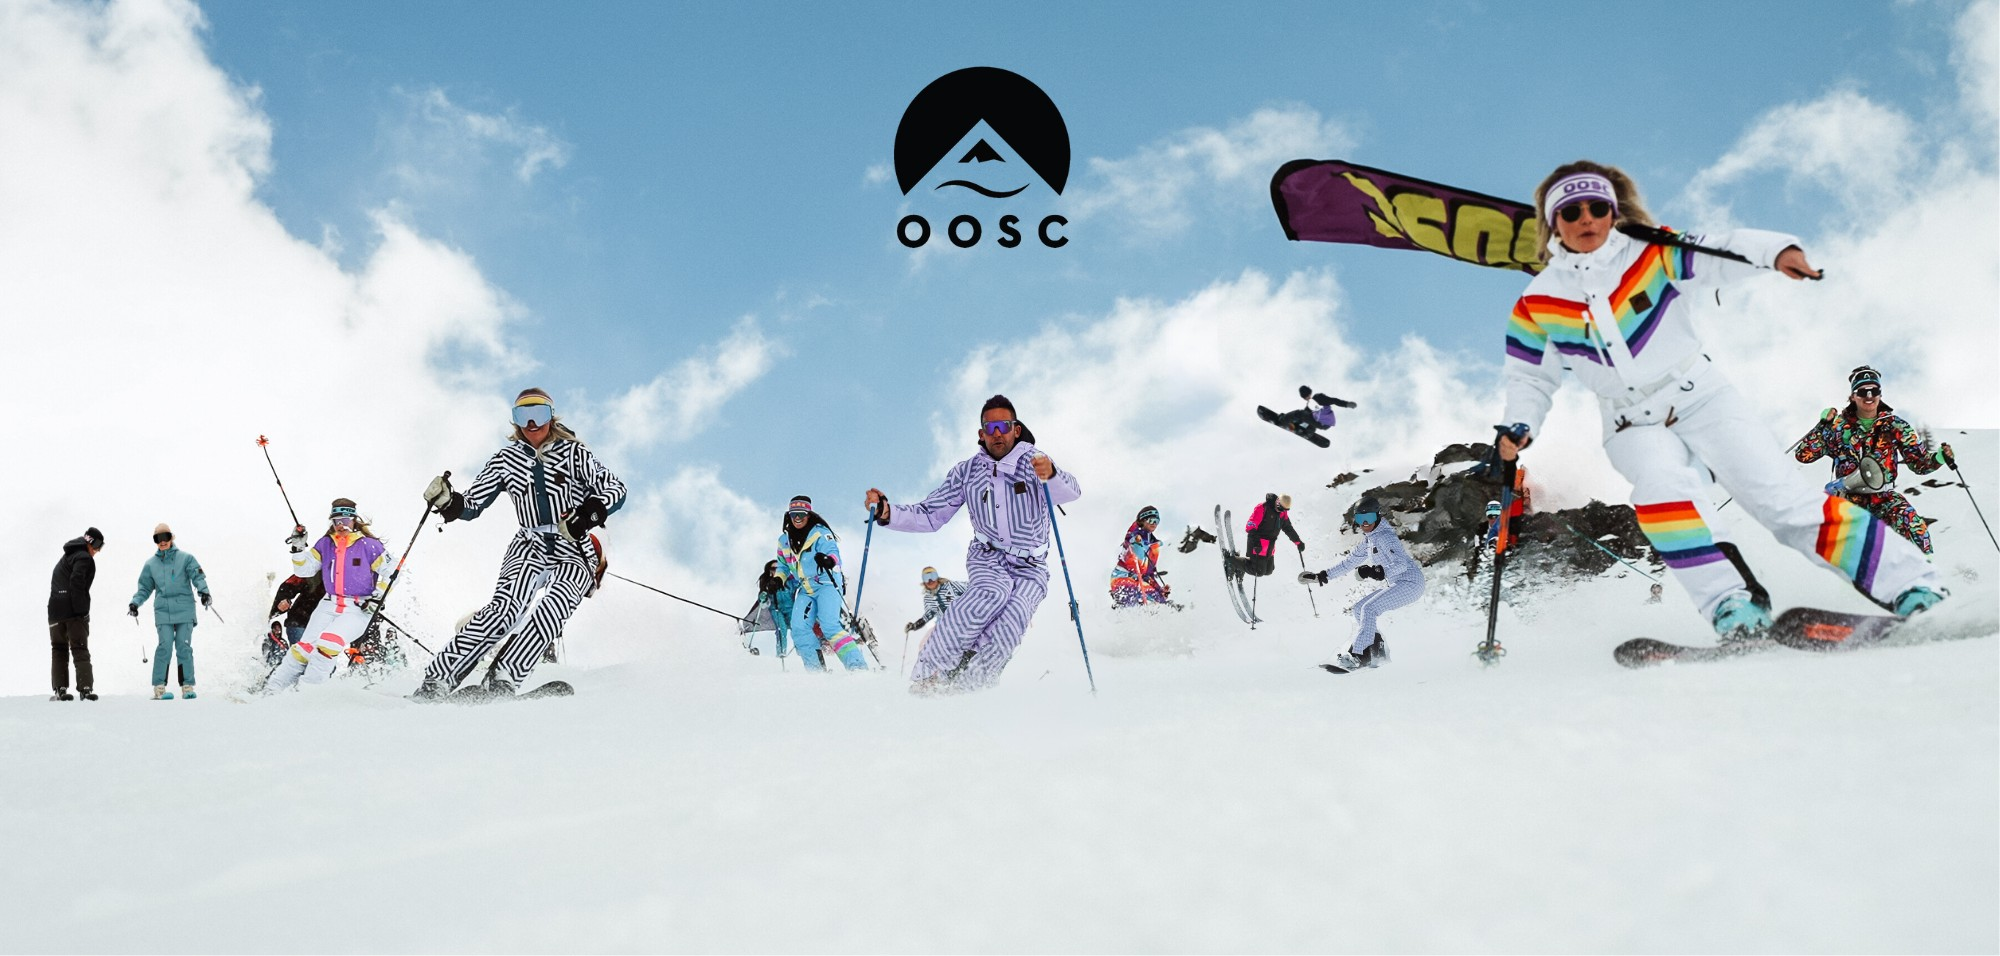 Ski Suits & Snow Onesies - Retro-Styled